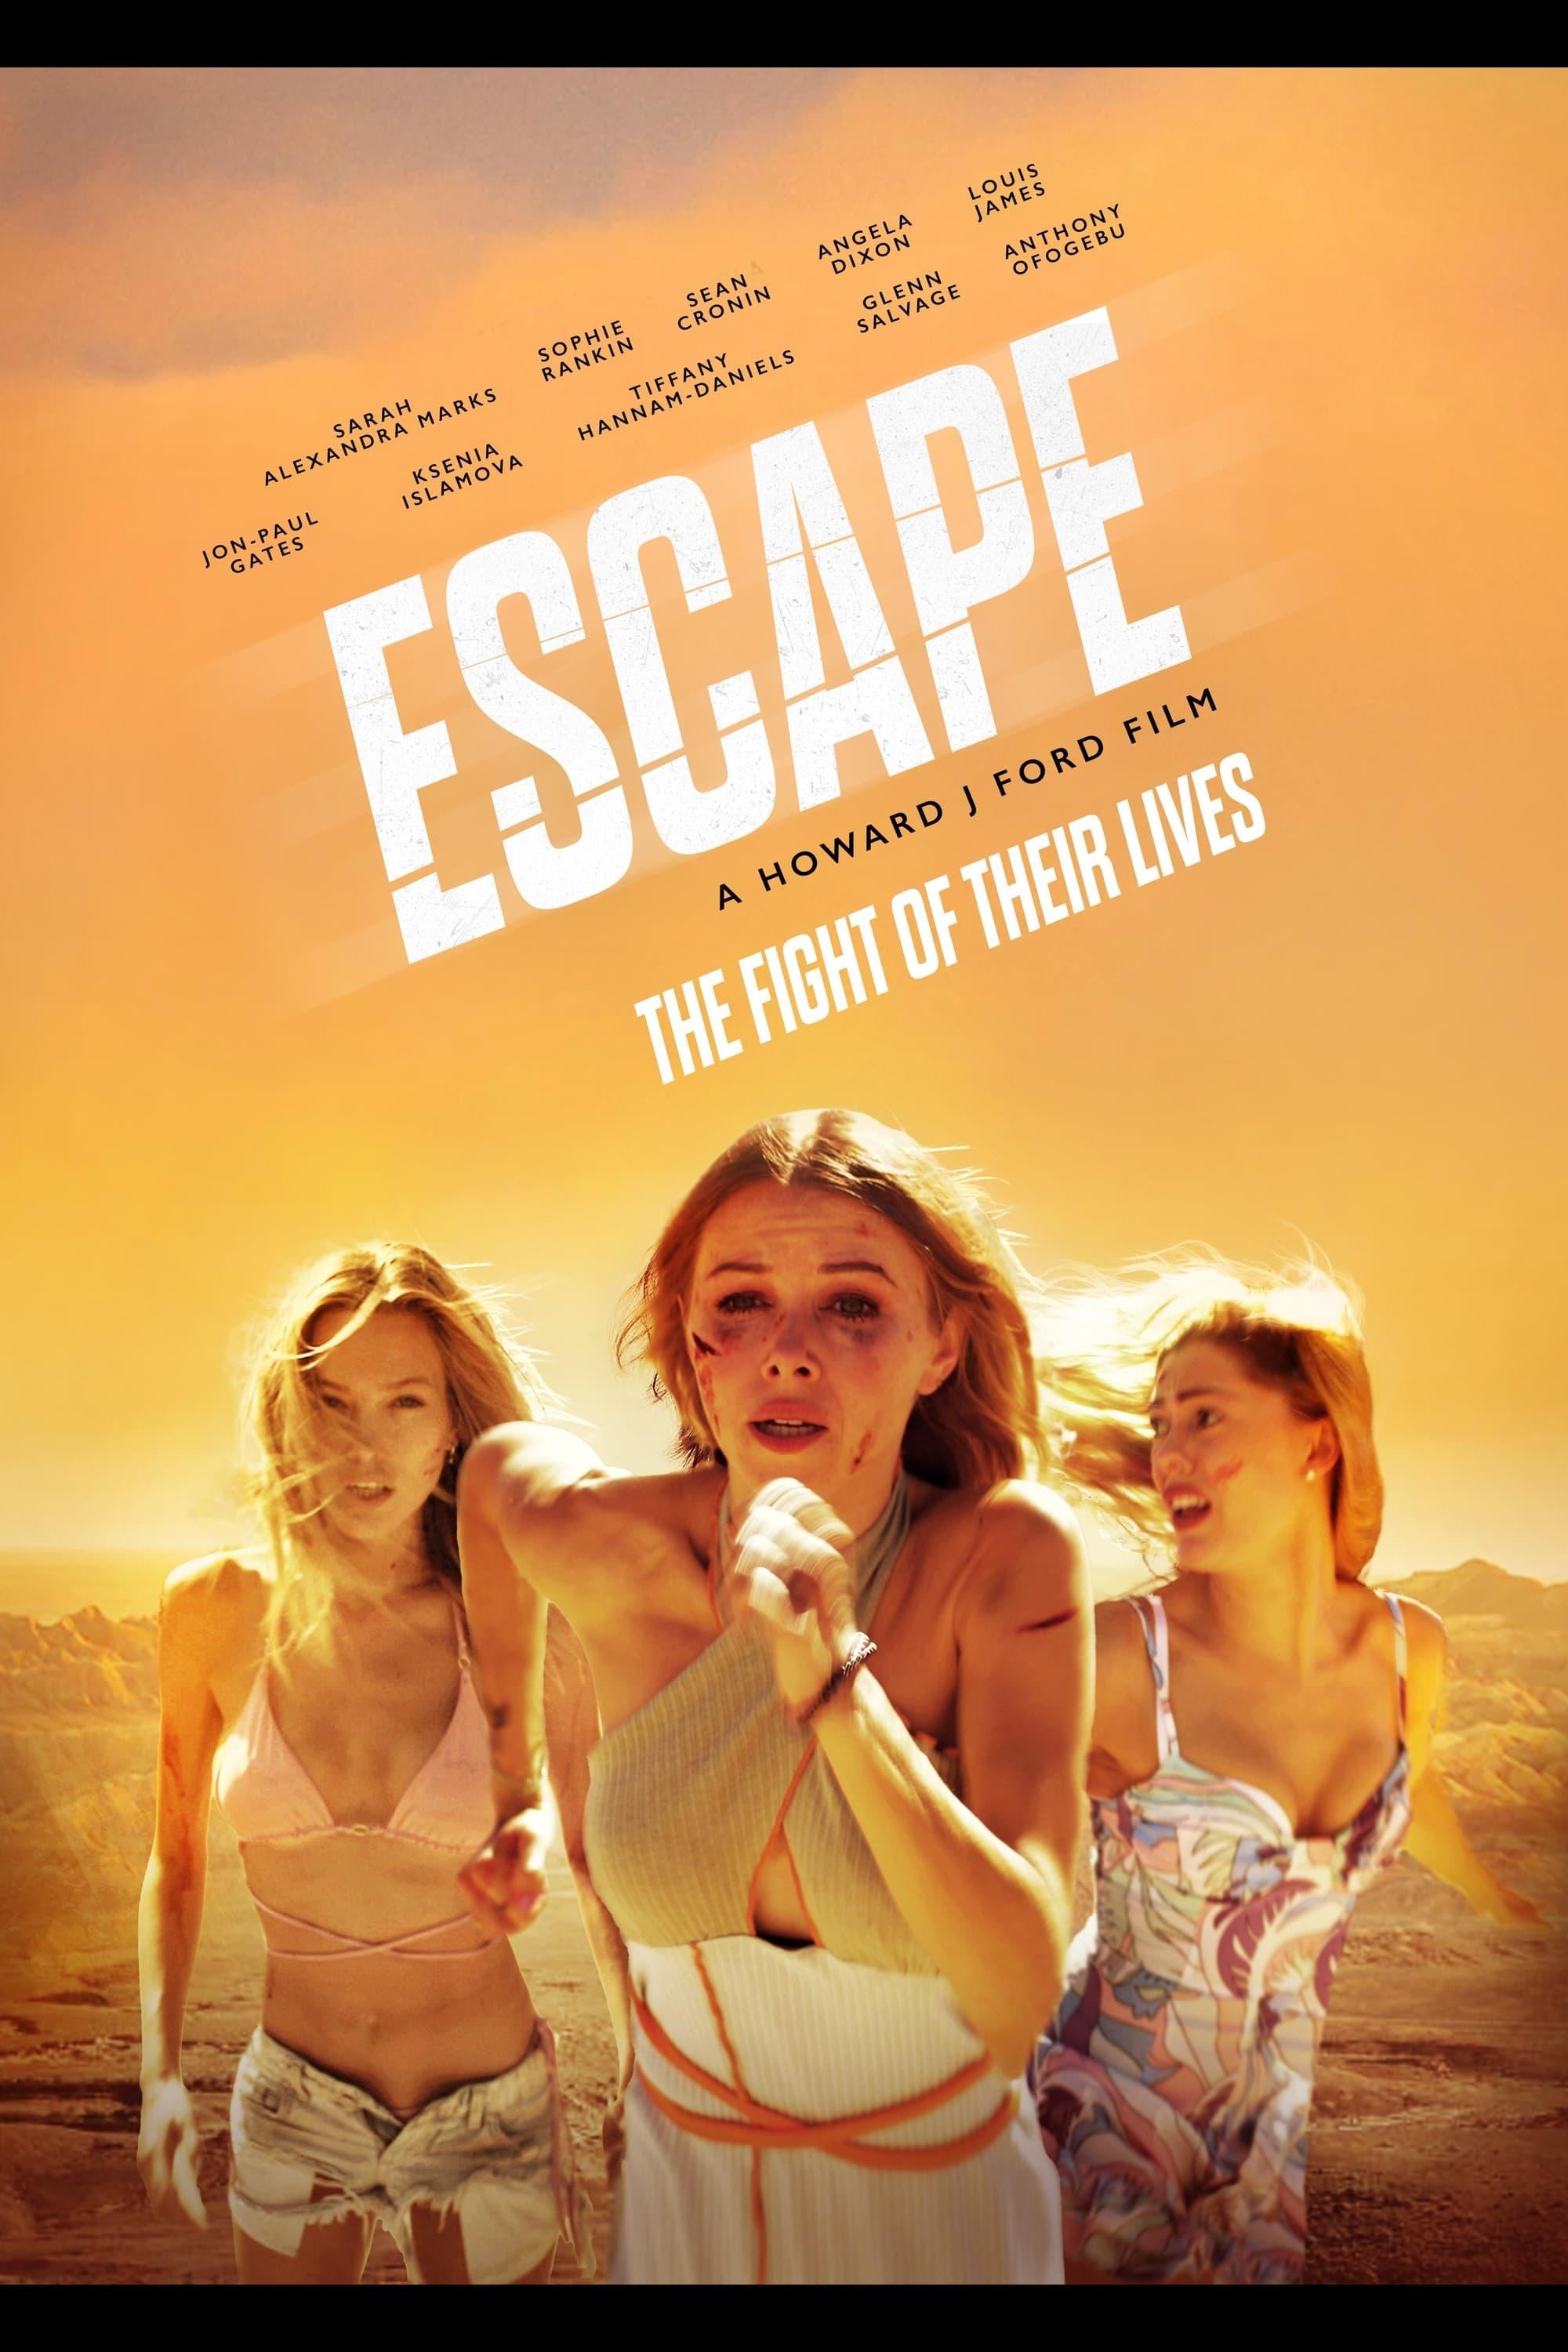 Escape poster